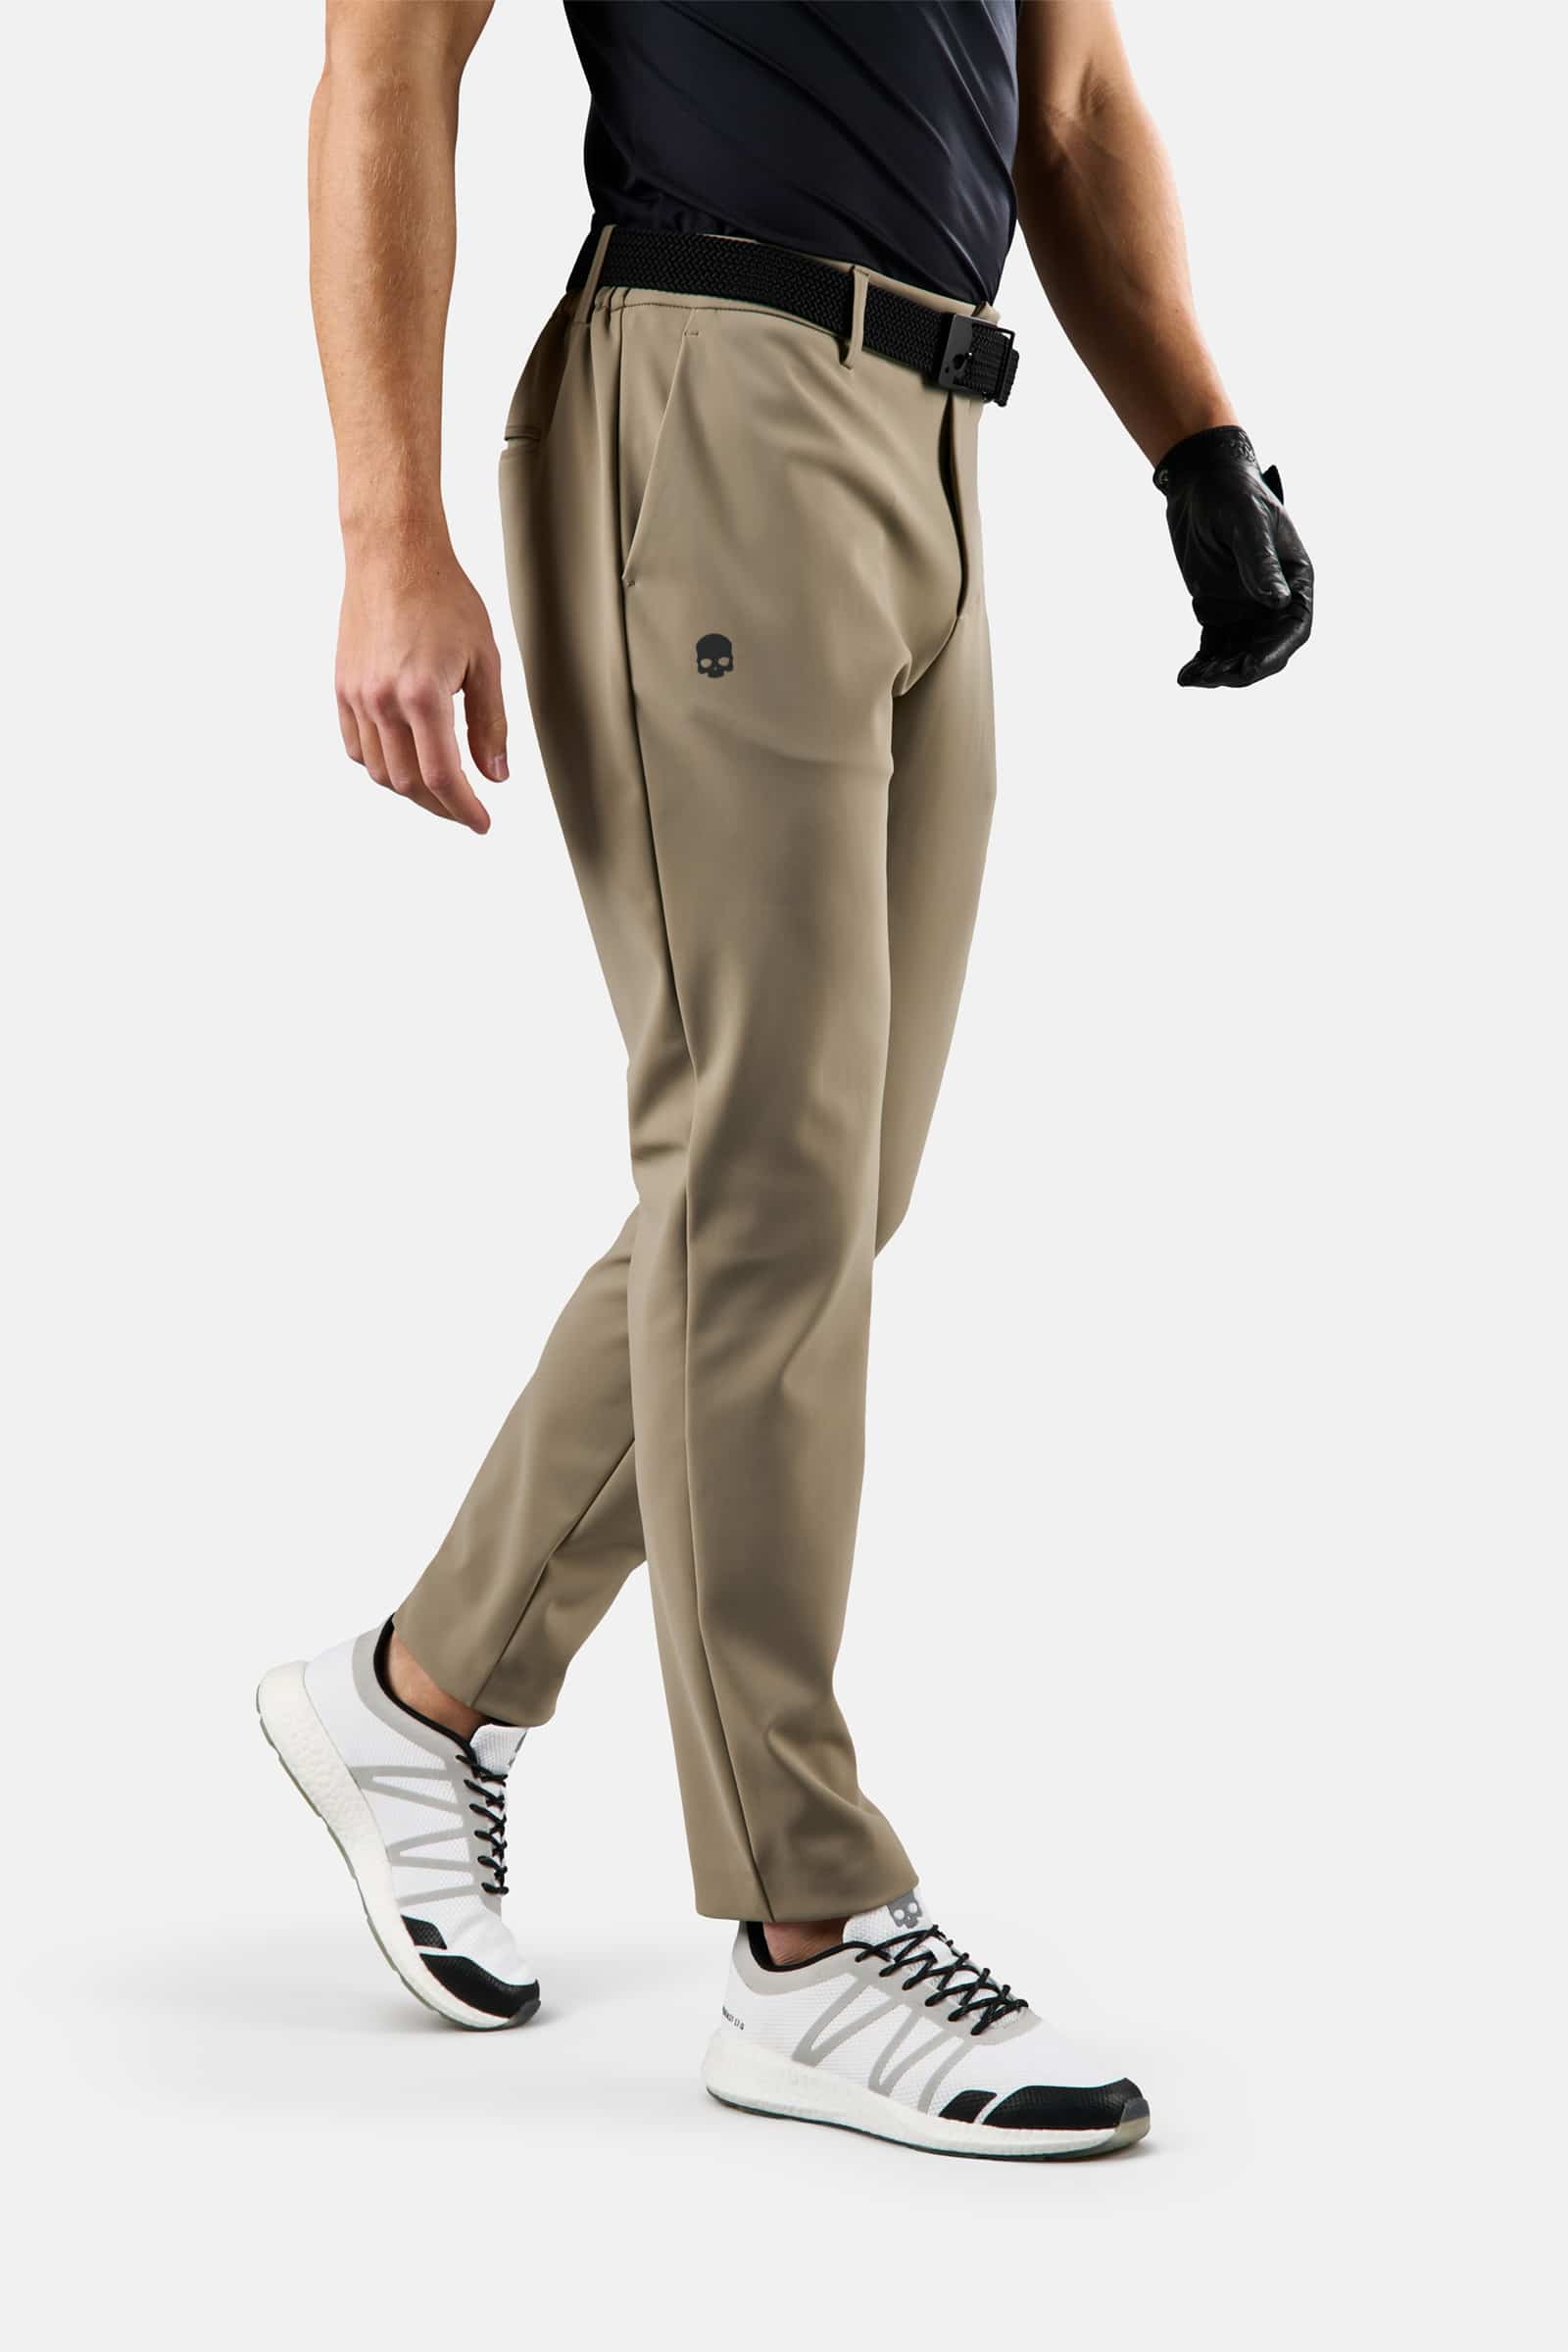 WINTER GOLF TECH PANTS - Outlet Hydrogen - Luxury Sportwear